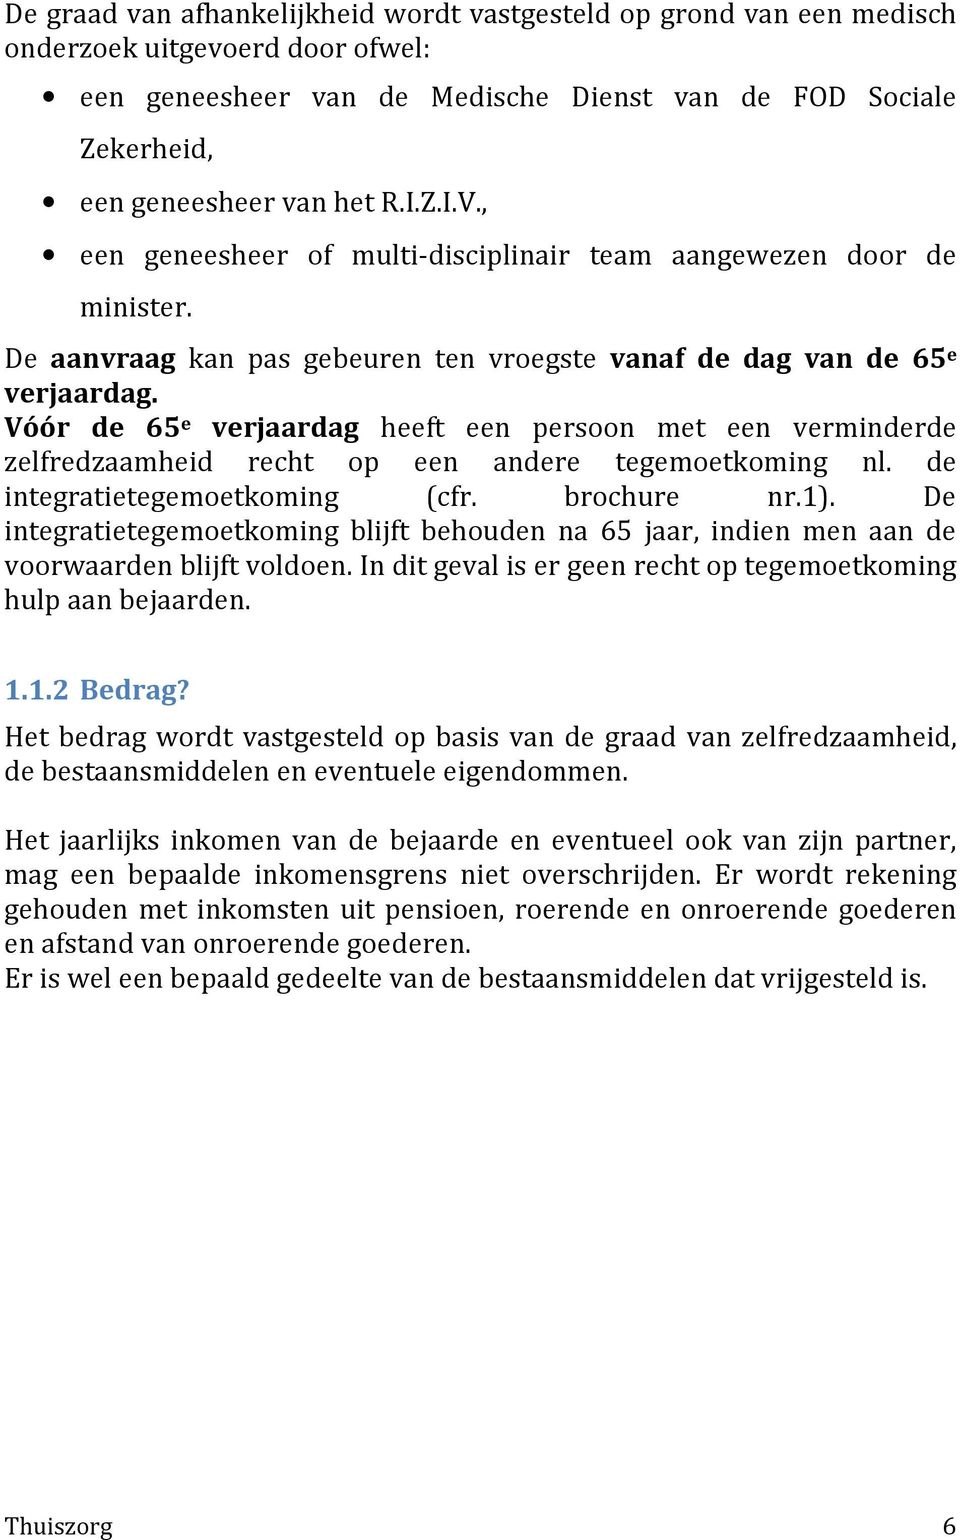 Vóór de 65 e verjaardag heeft een persoon met een verminderde zelfredzaamheid recht op een andere tegemoetkoming nl. de integratietegemoetkoming (cfr. brochure nr.1).